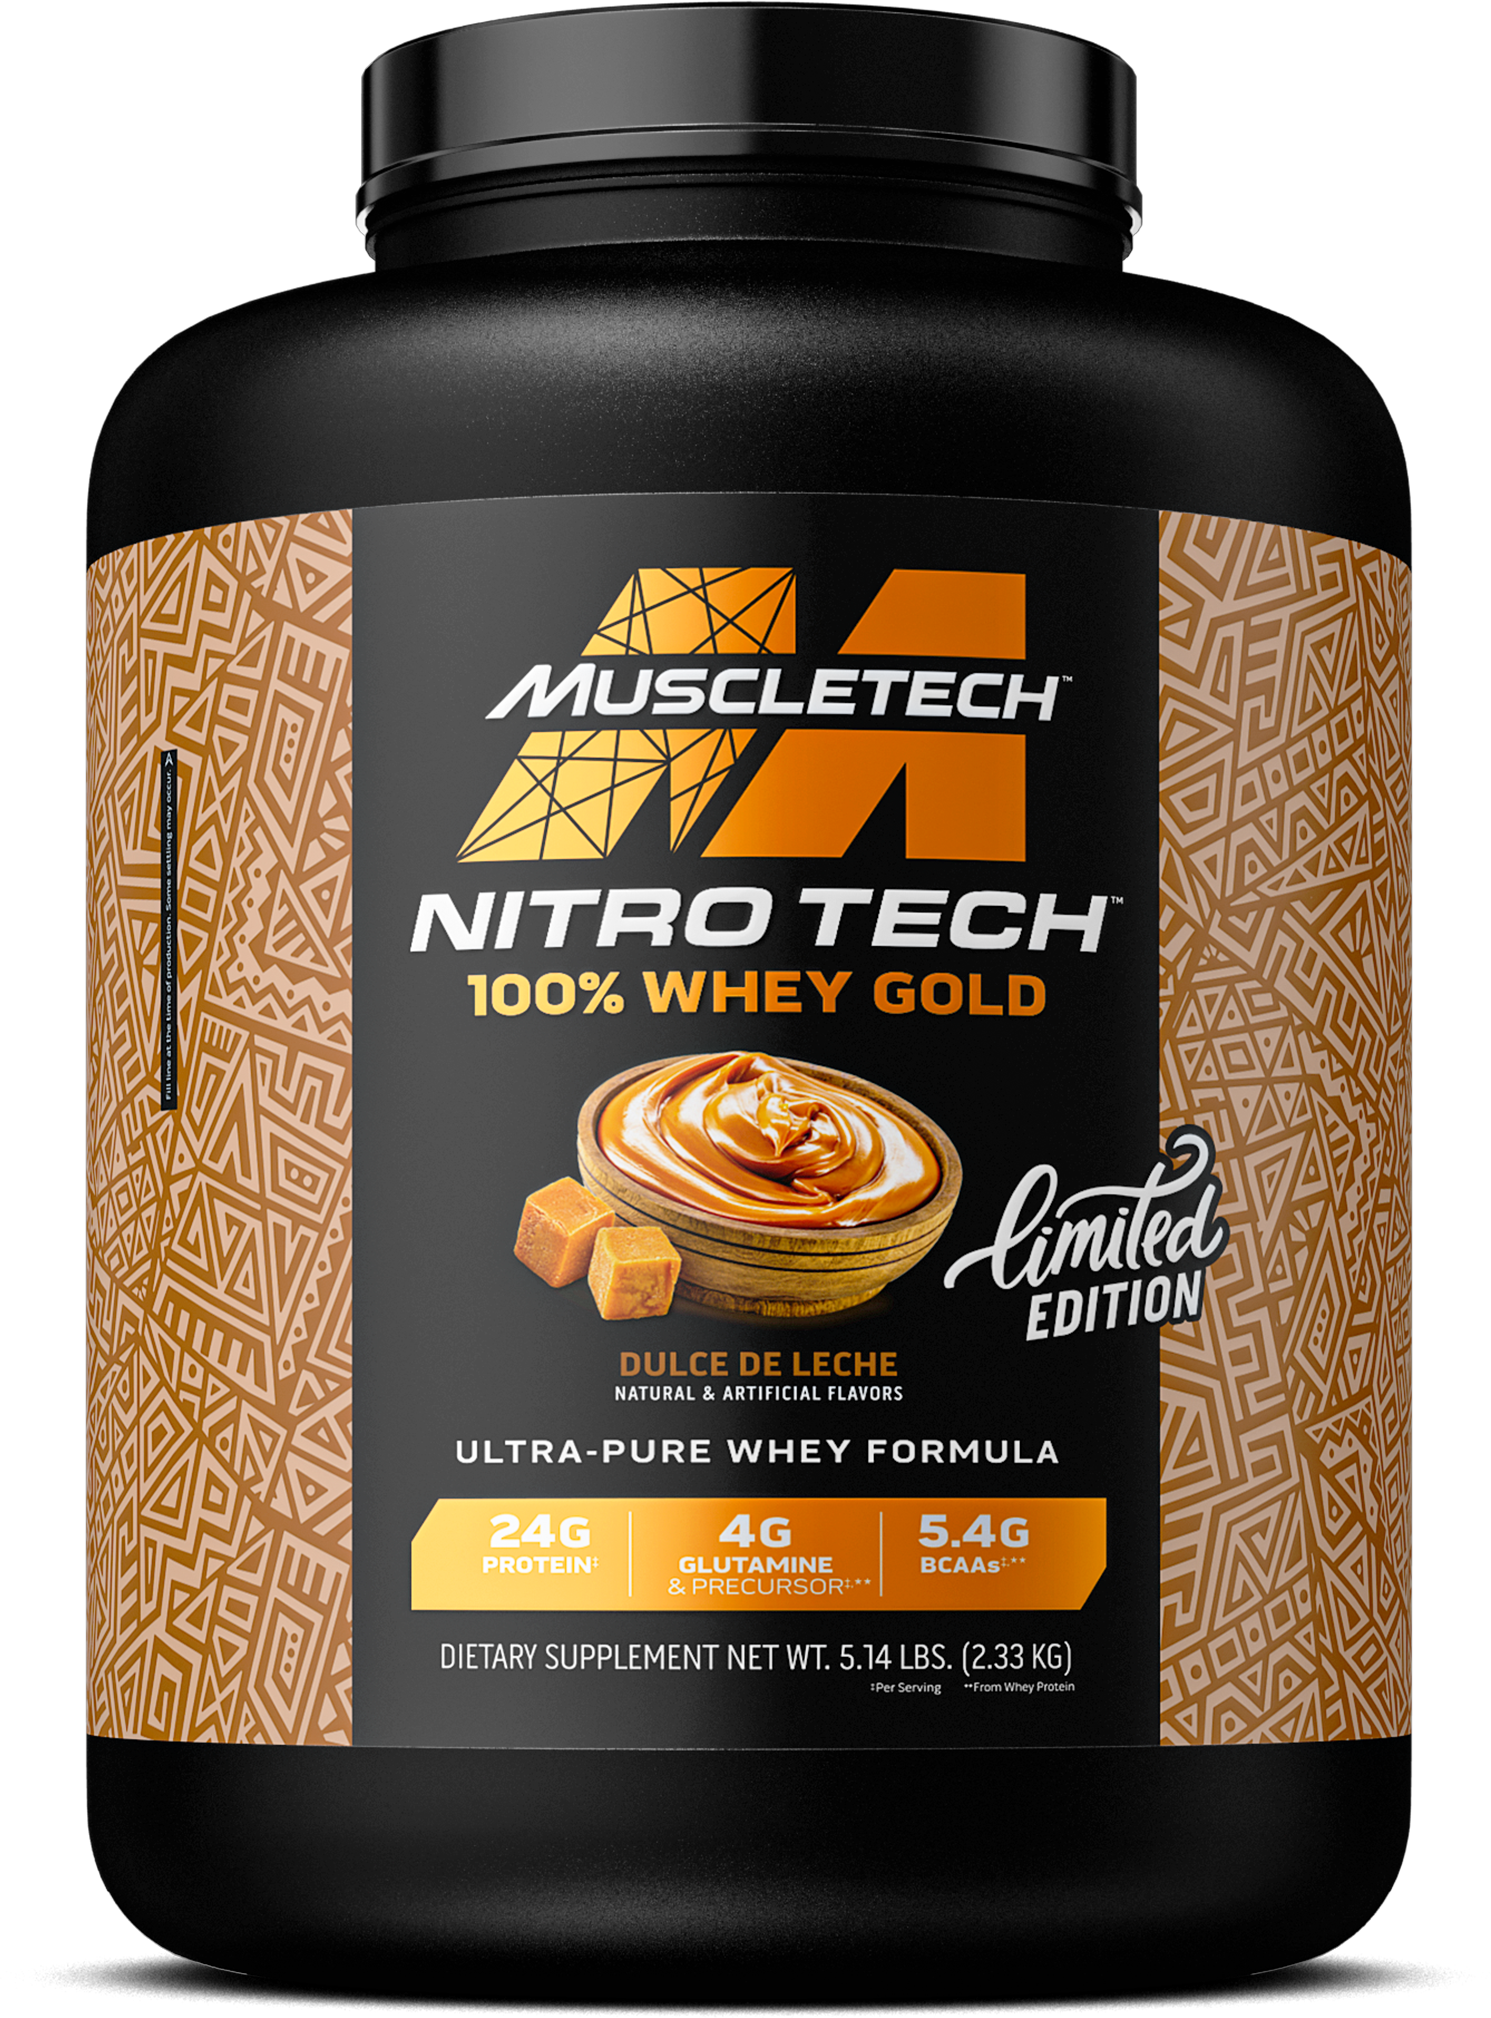 MuscleTech Nitro-Tech 100% Whey Gold Dulce de Leche